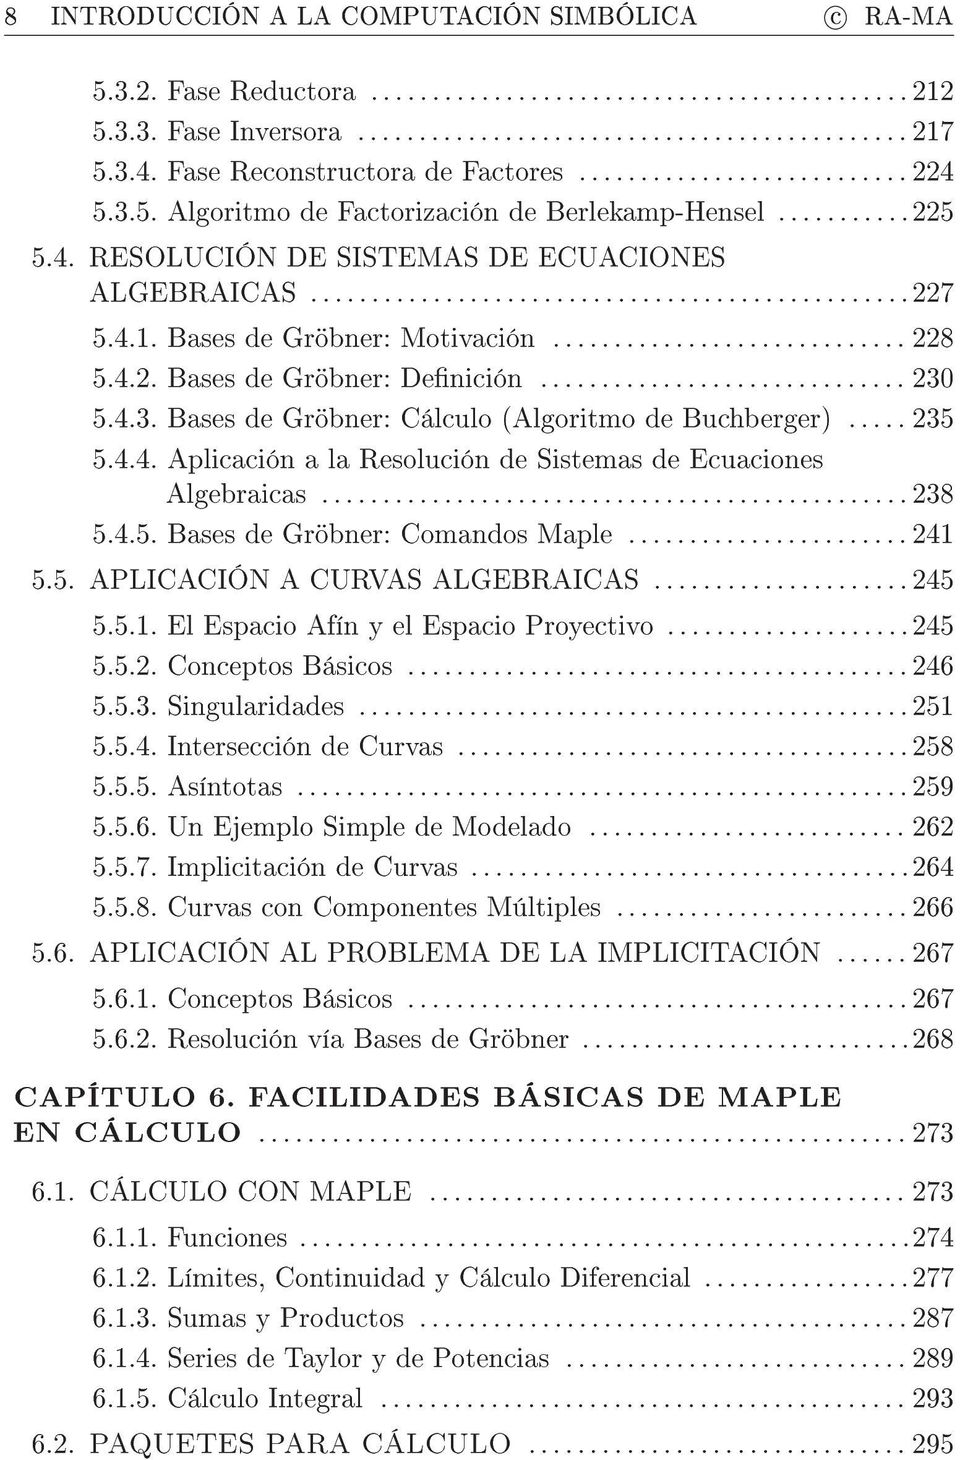 5.4.3. Bases de Gröbner: Cálculo (Algoritmo de Buchberger)... 235 5.4.4. Aplicación a la Resolución de Sistemas de Ecuaciones Algebraicas... 238 5.4.5. Bases de Gröbner: Comandos Maple... 241 5.5. APLICACIÓN A CURVAS ALGEBRAICAS.